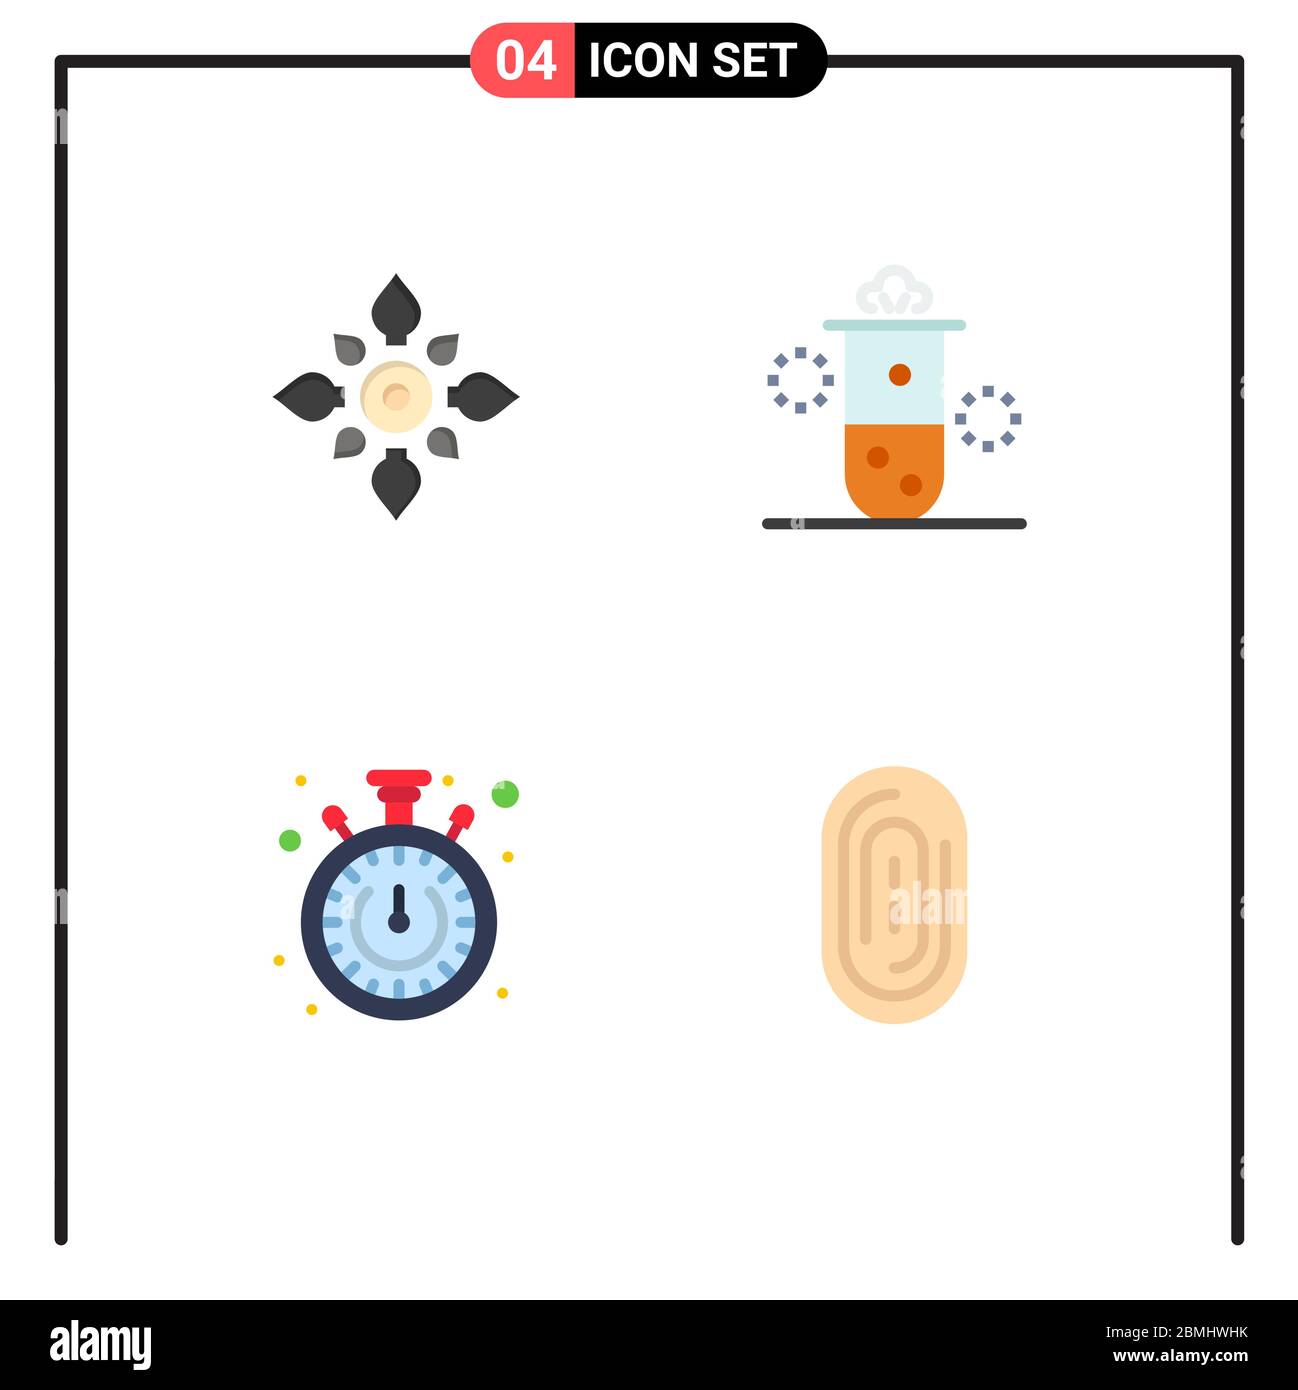 Pacchetto interfaccia utente di 4 icone piatte di base di Celebrate, Science, diwali, Radiation nucleare, cronometro Editable Vector Design Elements Illustrazione Vettoriale